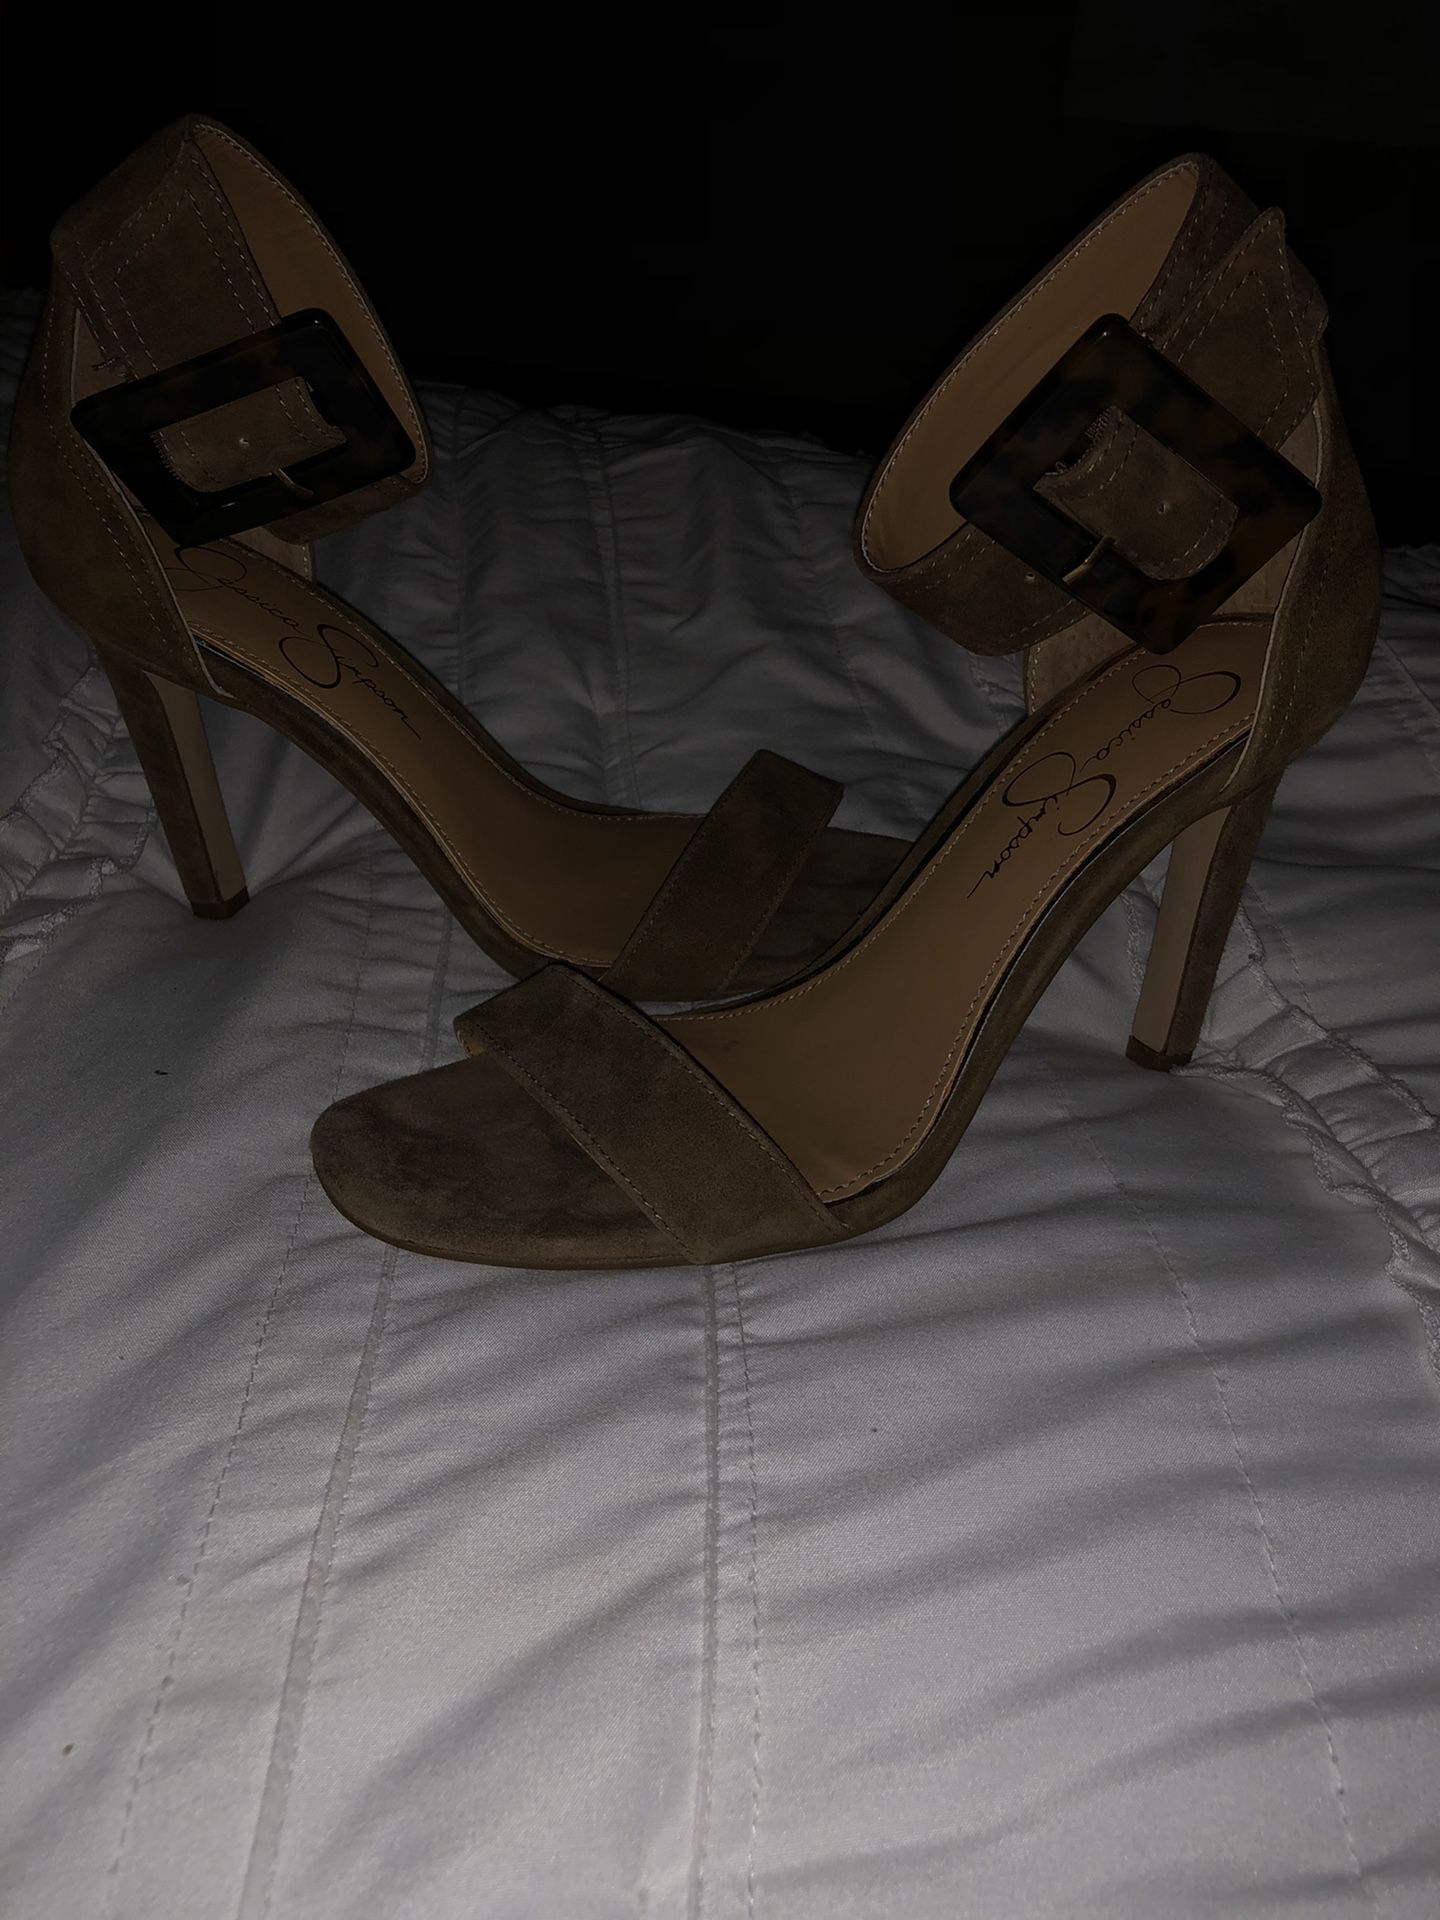 Jessica Simpson heels size 8.5